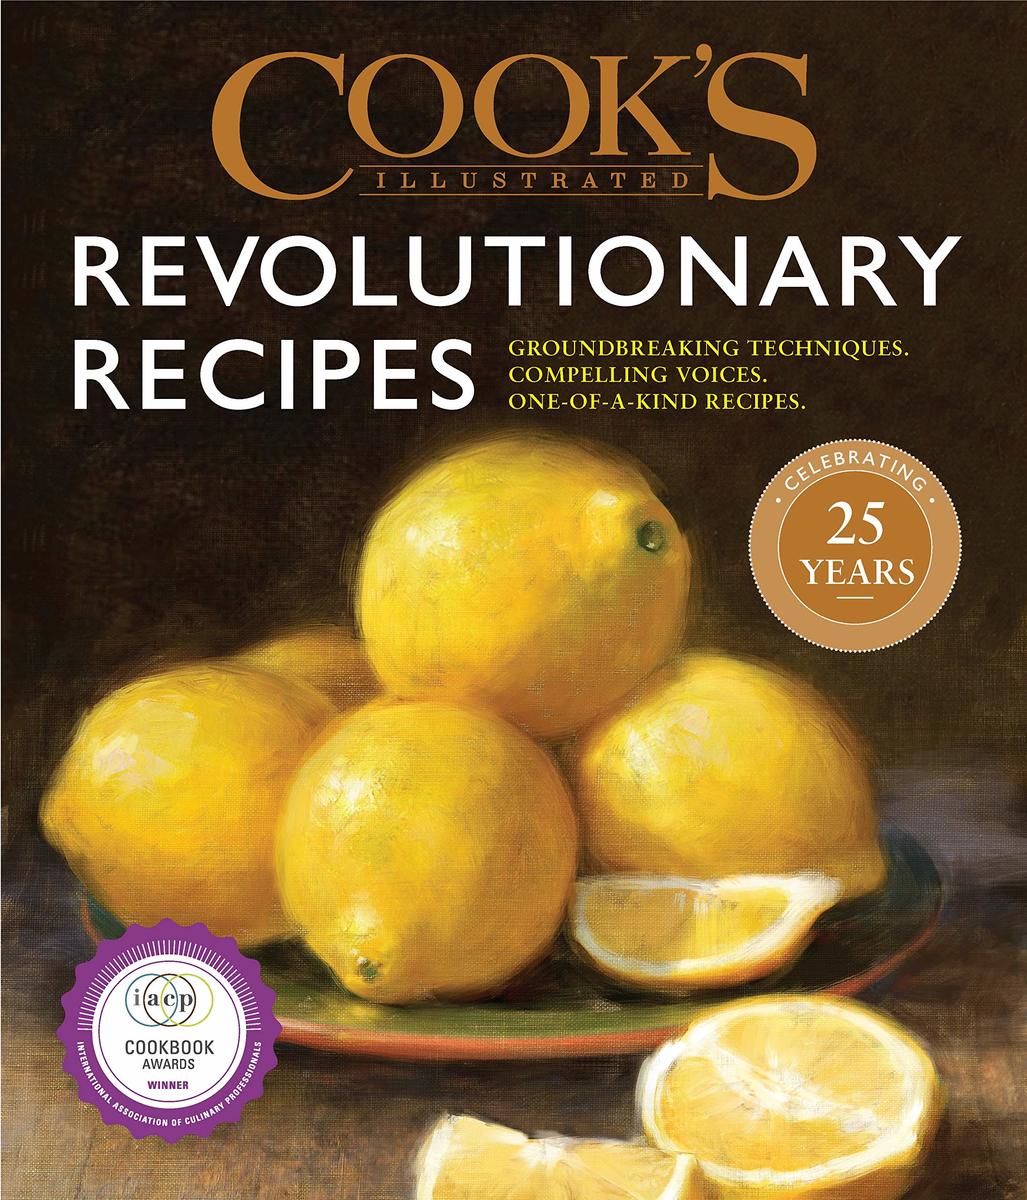 Cook's Revolutionary Recipes